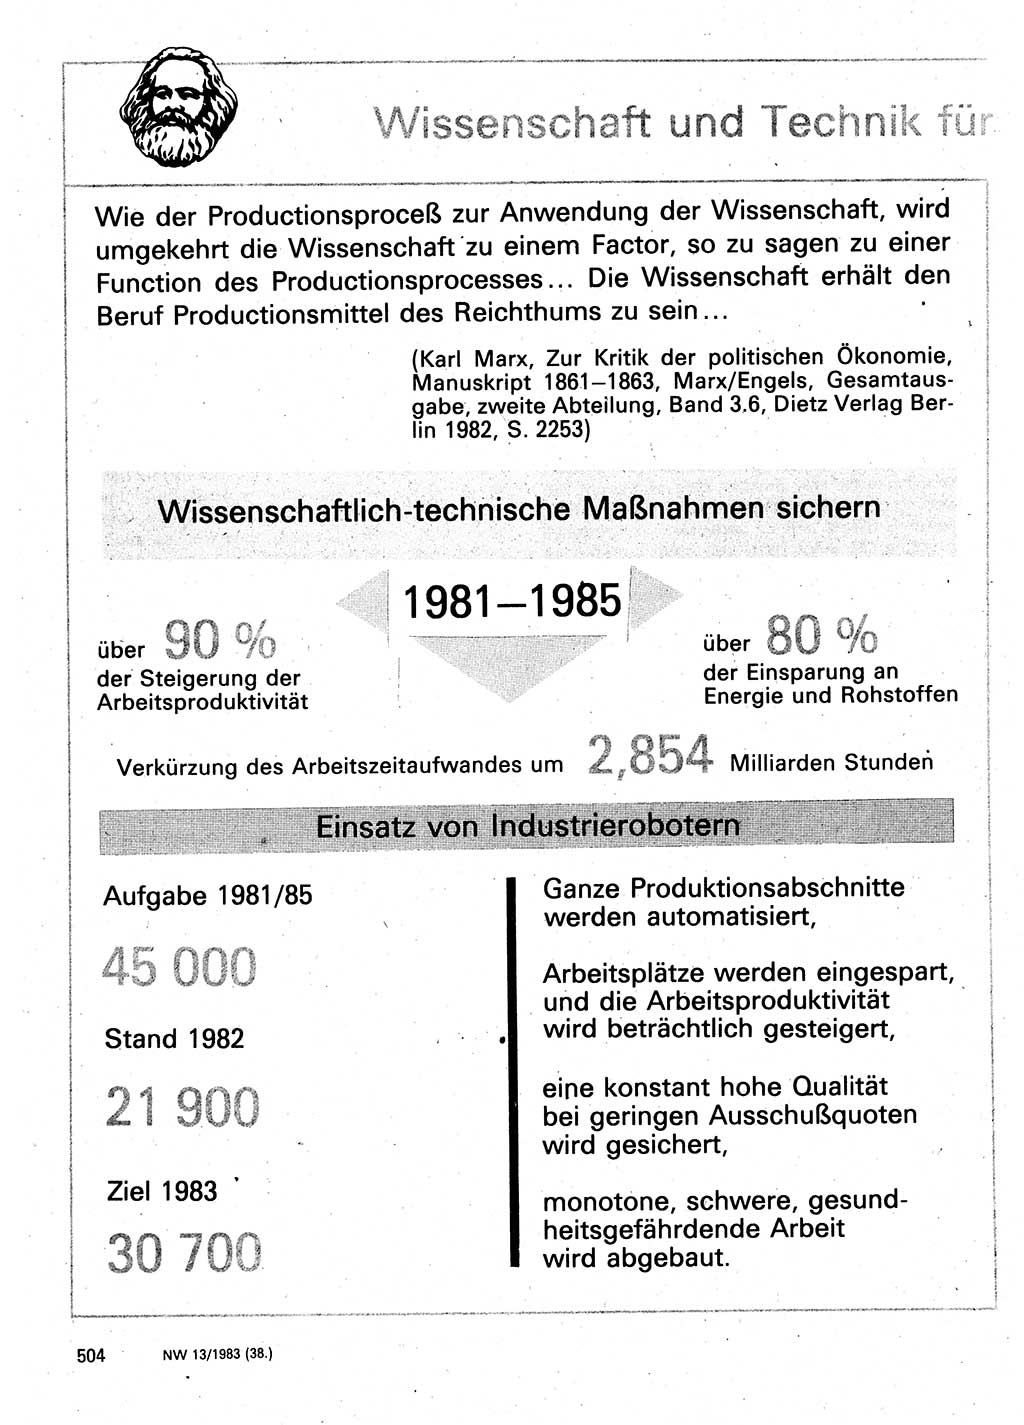 Neuer Weg (NW), Organ des Zentralkomitees (ZK) der SED (Sozialistische Einheitspartei Deutschlands) für Fragen des Parteilebens, 38. Jahrgang [Deutsche Demokratische Republik (DDR)] 1983, Seite 504 (NW ZK SED DDR 1983, S. 504)